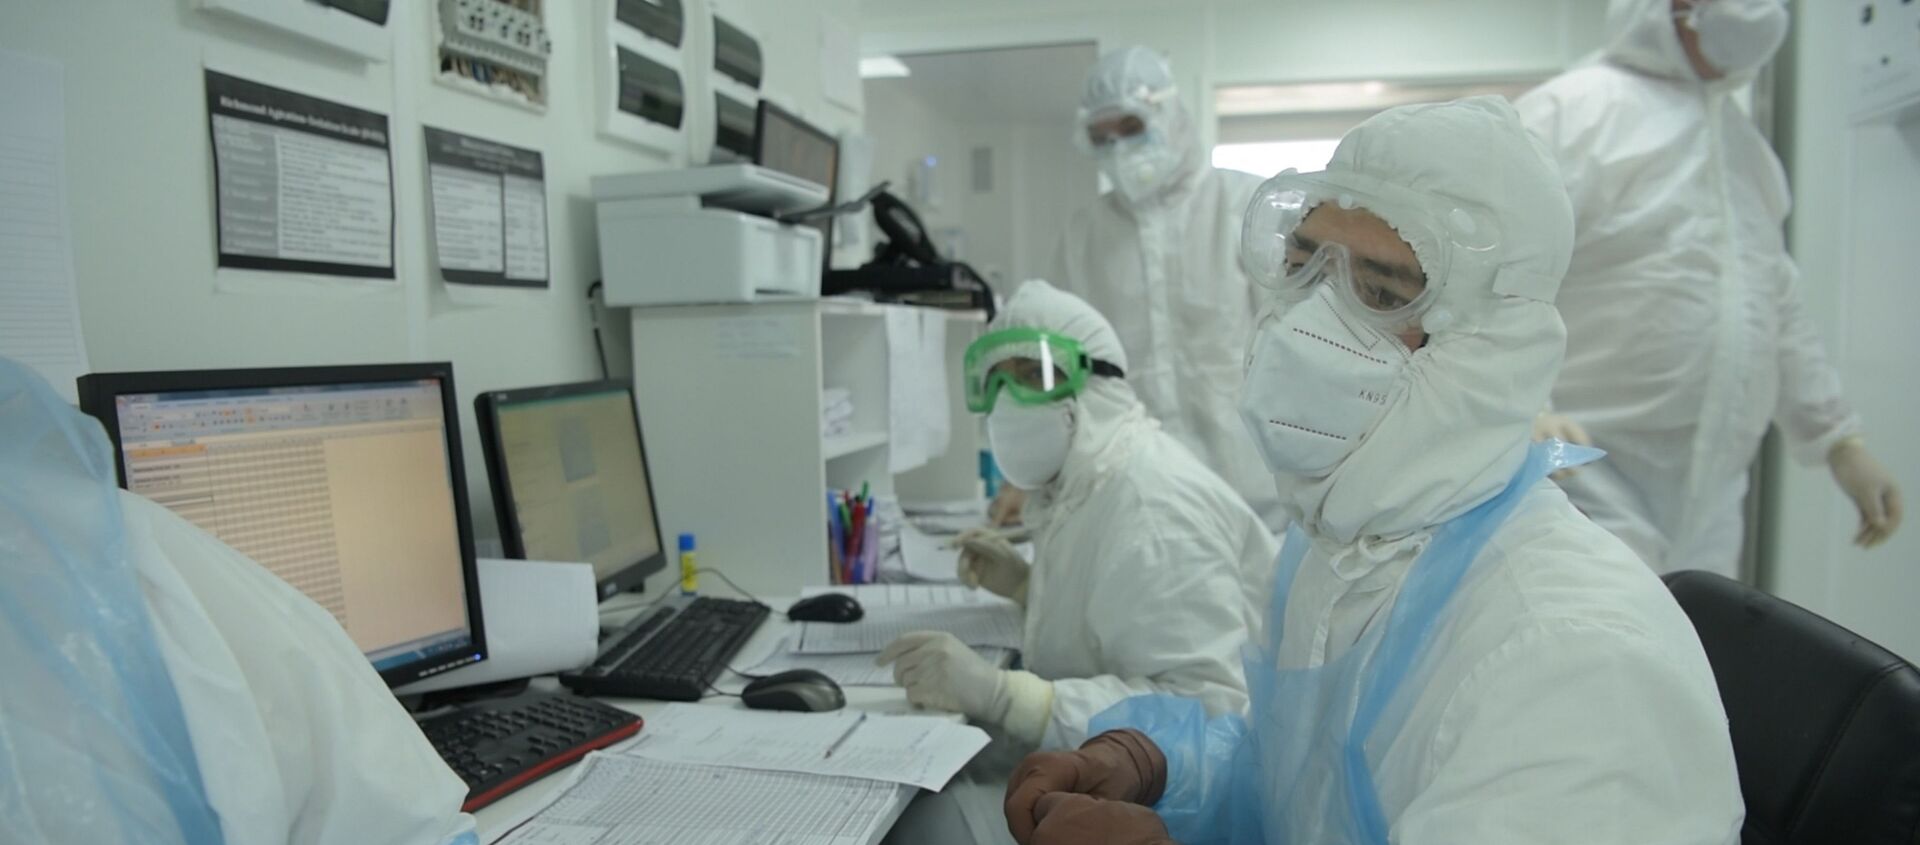 Врачи работают с документами в отделении больницы с коронавирусом в Нур-Султане - Sputnik Казахстан, 1920, 27.11.2020